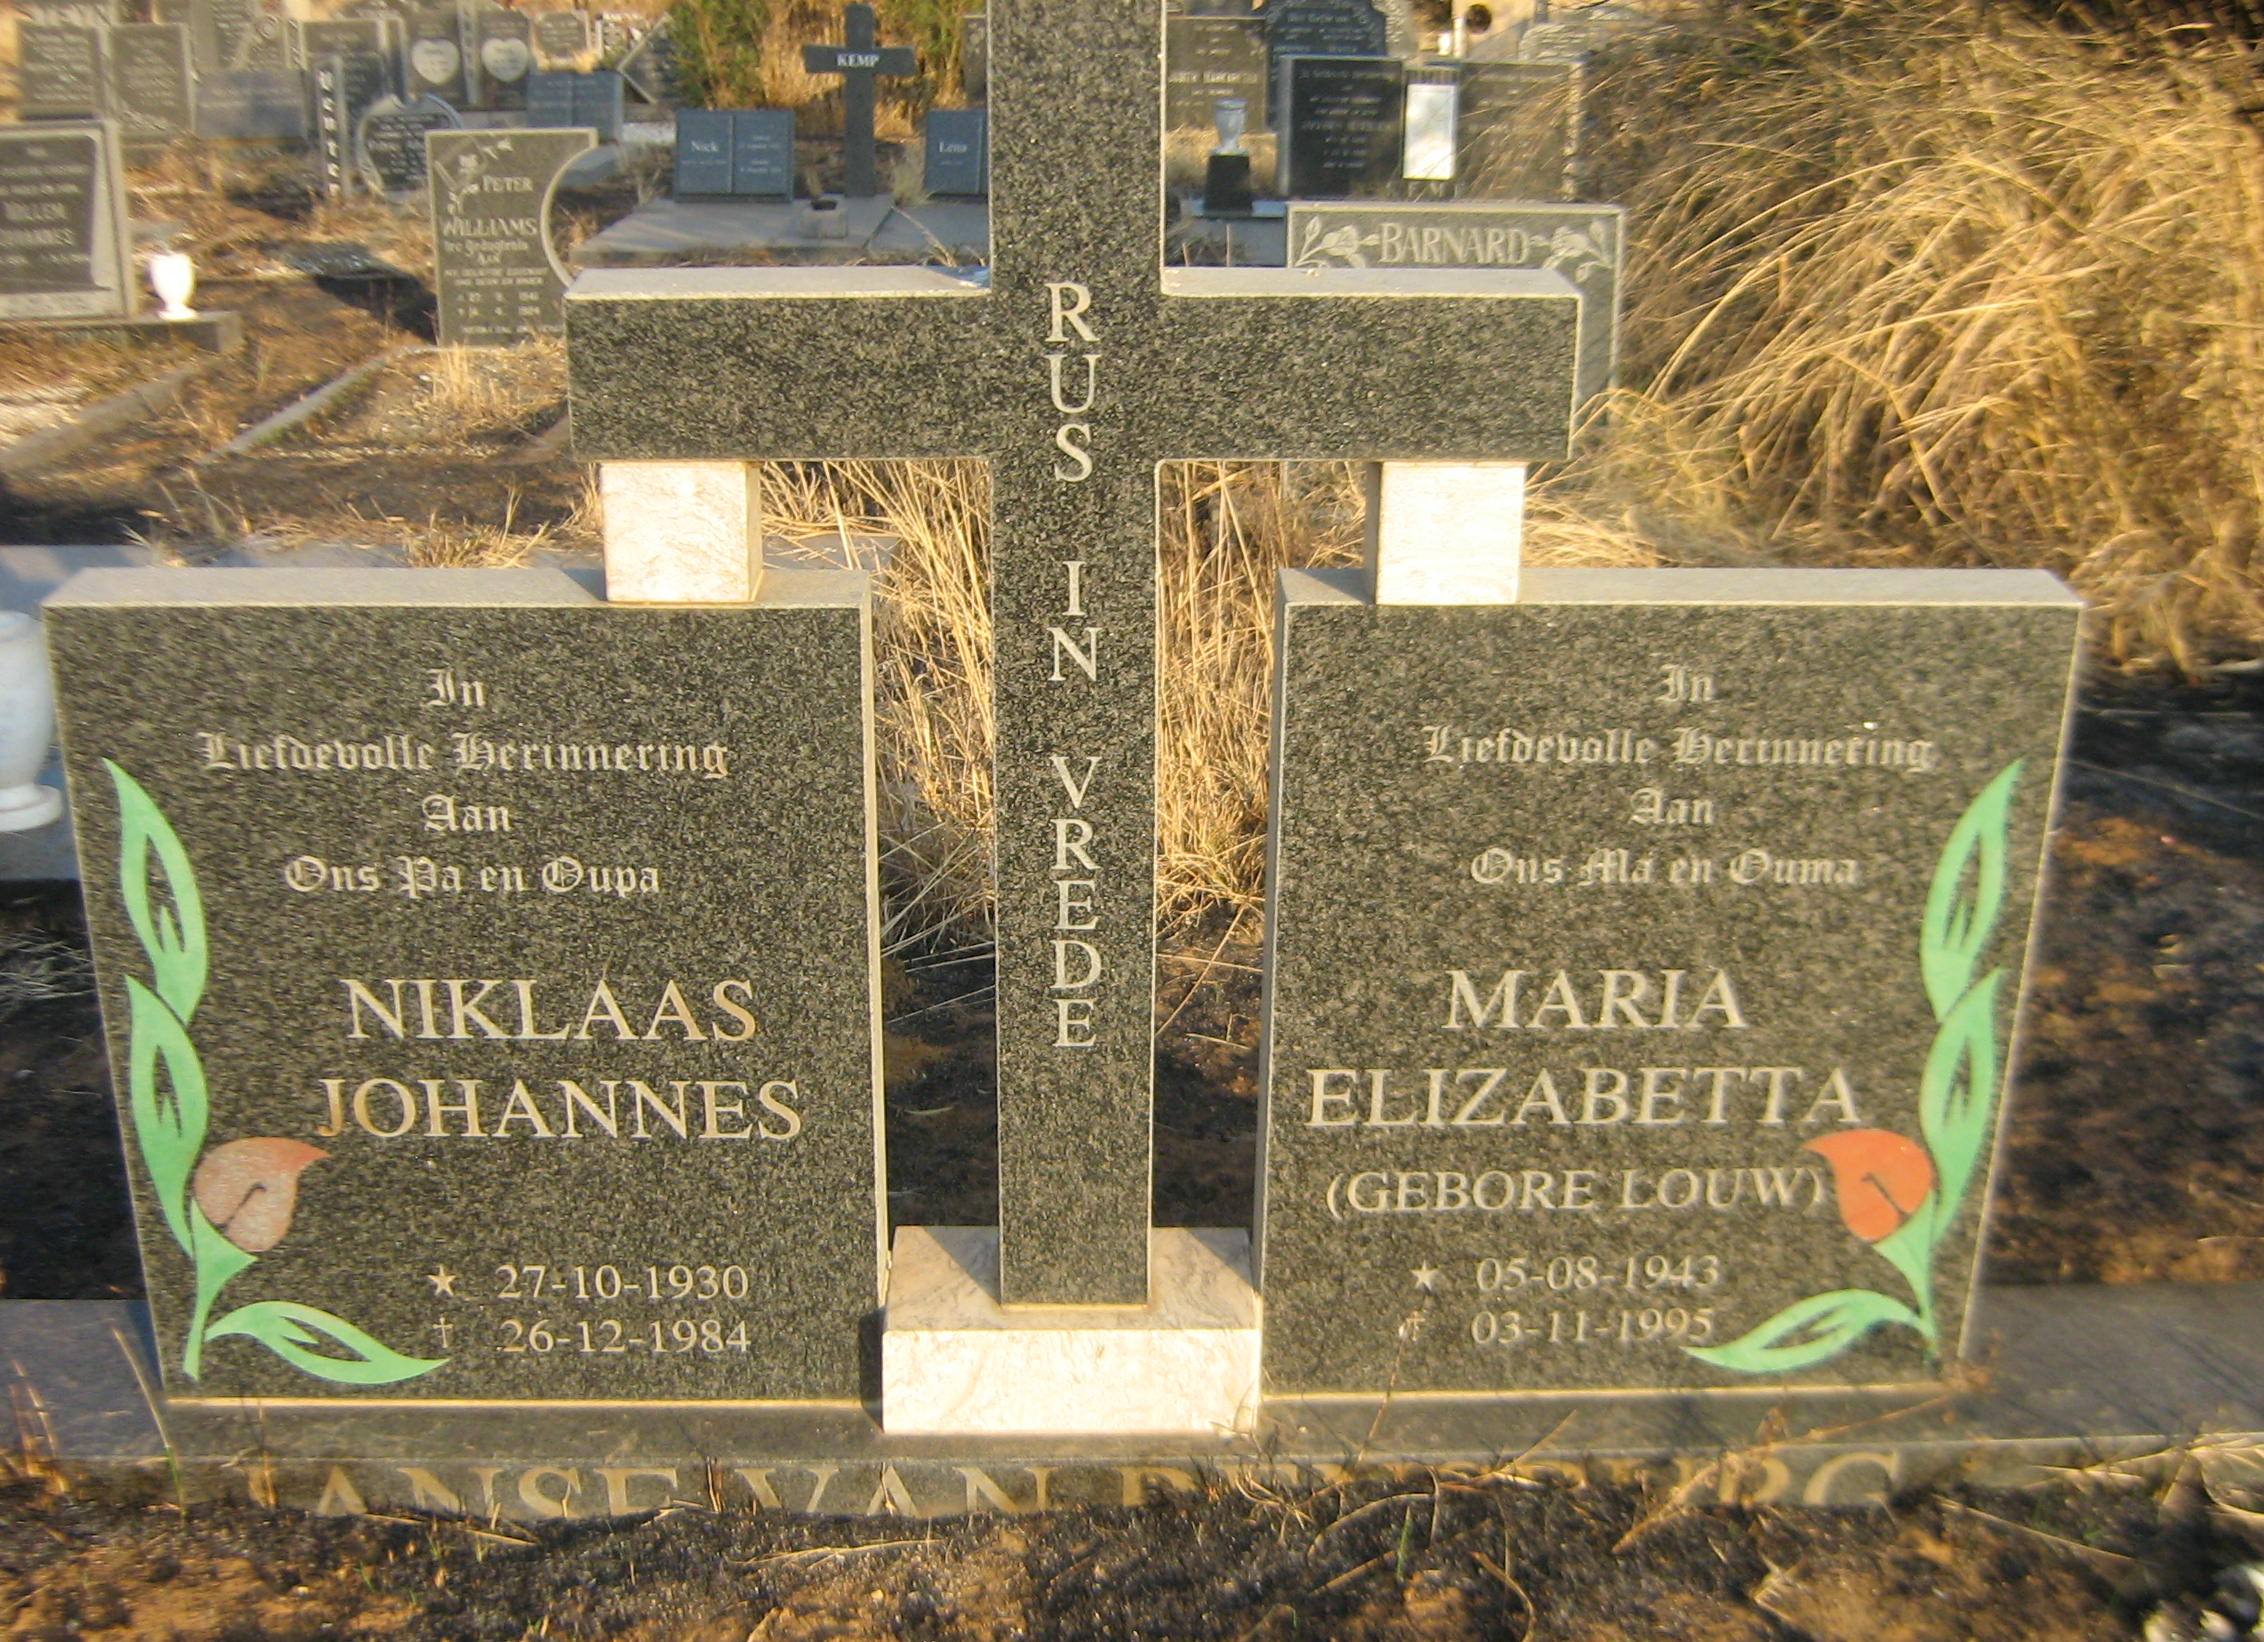 RENSBURG Niklaas Johannes, Janse van 1930-1984 & Maria Elizabetta LOUW 1943-1995